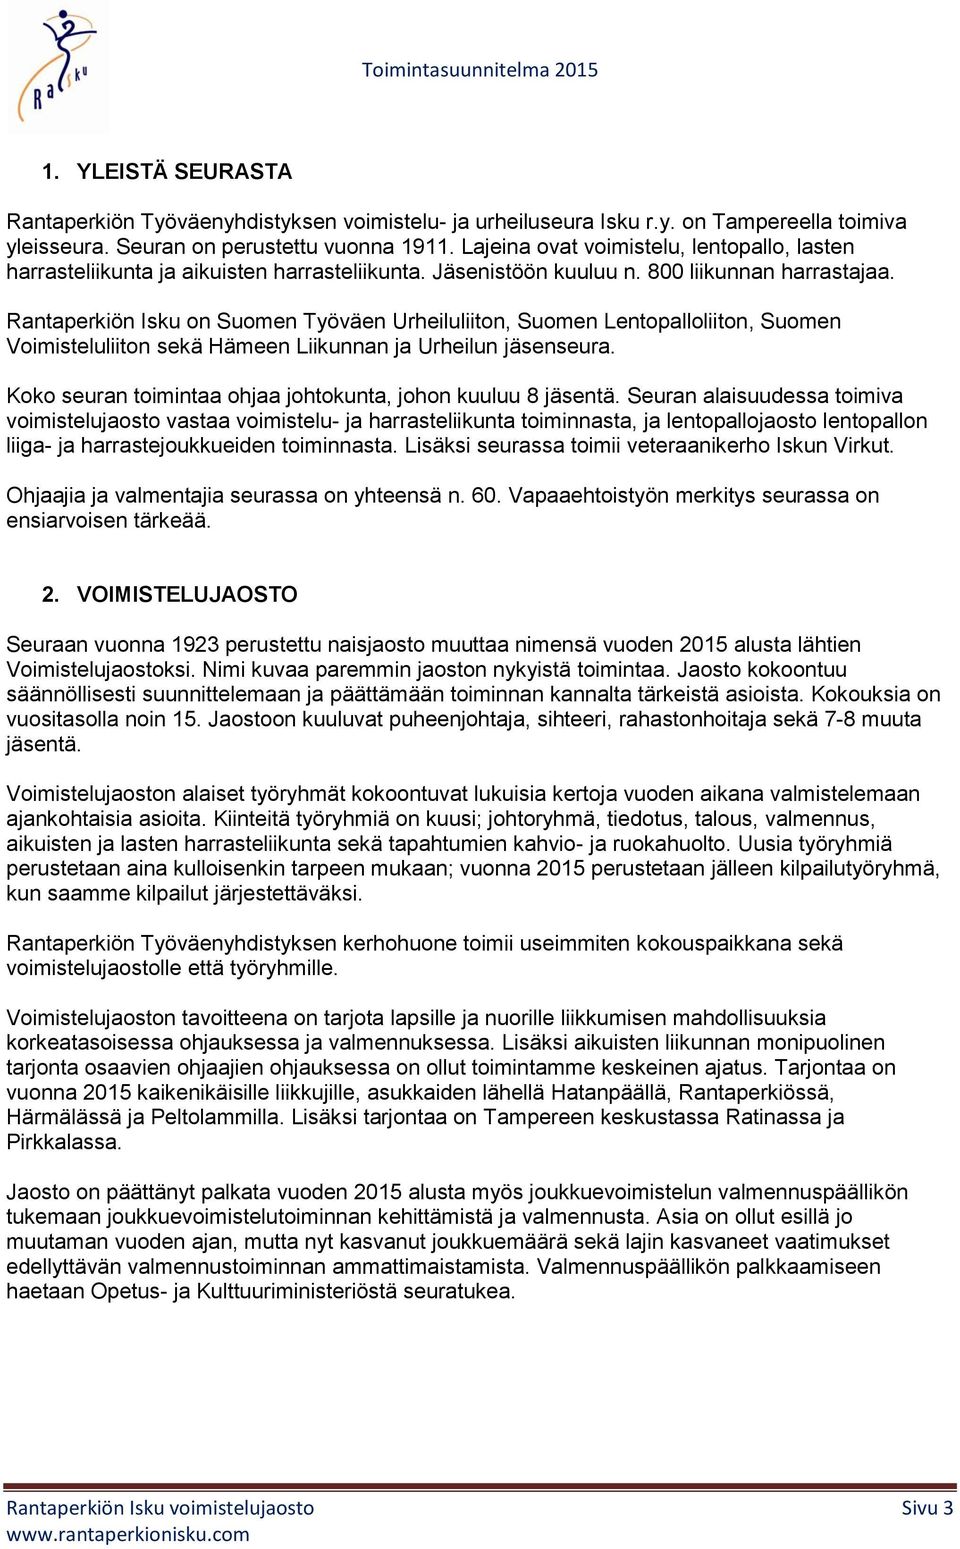 Rantaperkiön Isku on Suomen Työväen Urheiluliiton, Suomen Lentopalloliiton, Suomen Voimisteluliiton sekä Hämeen Liikunnan ja Urheilun jäsenseura.